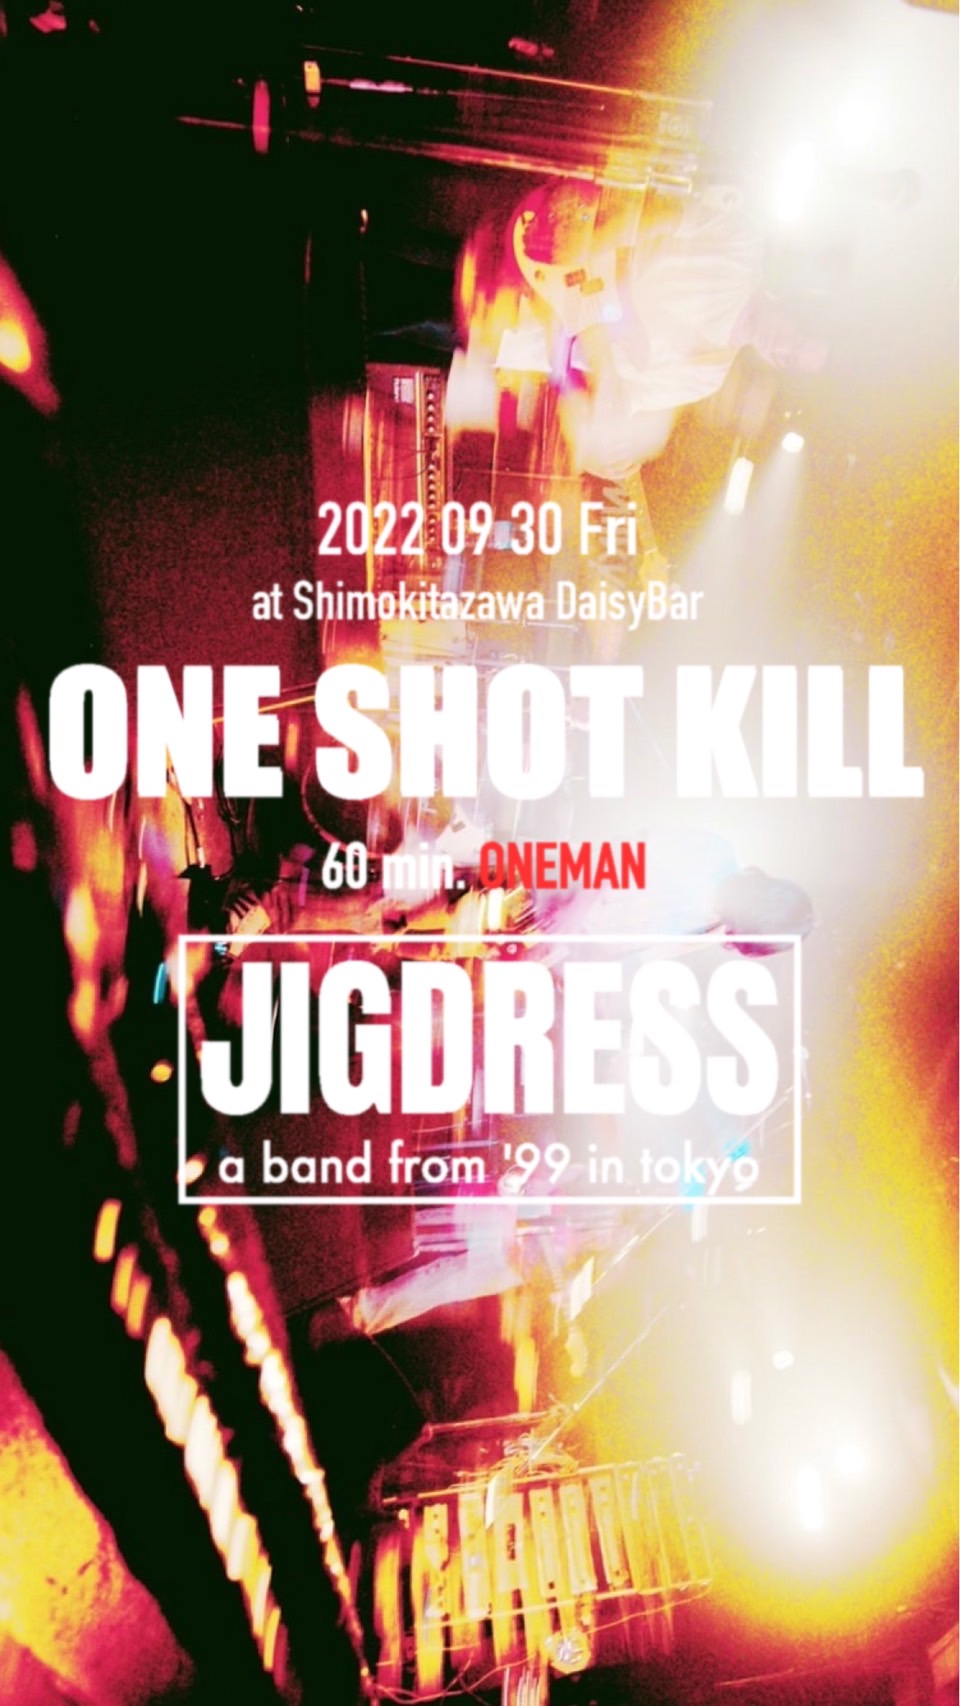 JIGDRESS pre. 「ONE SHOT KILL」